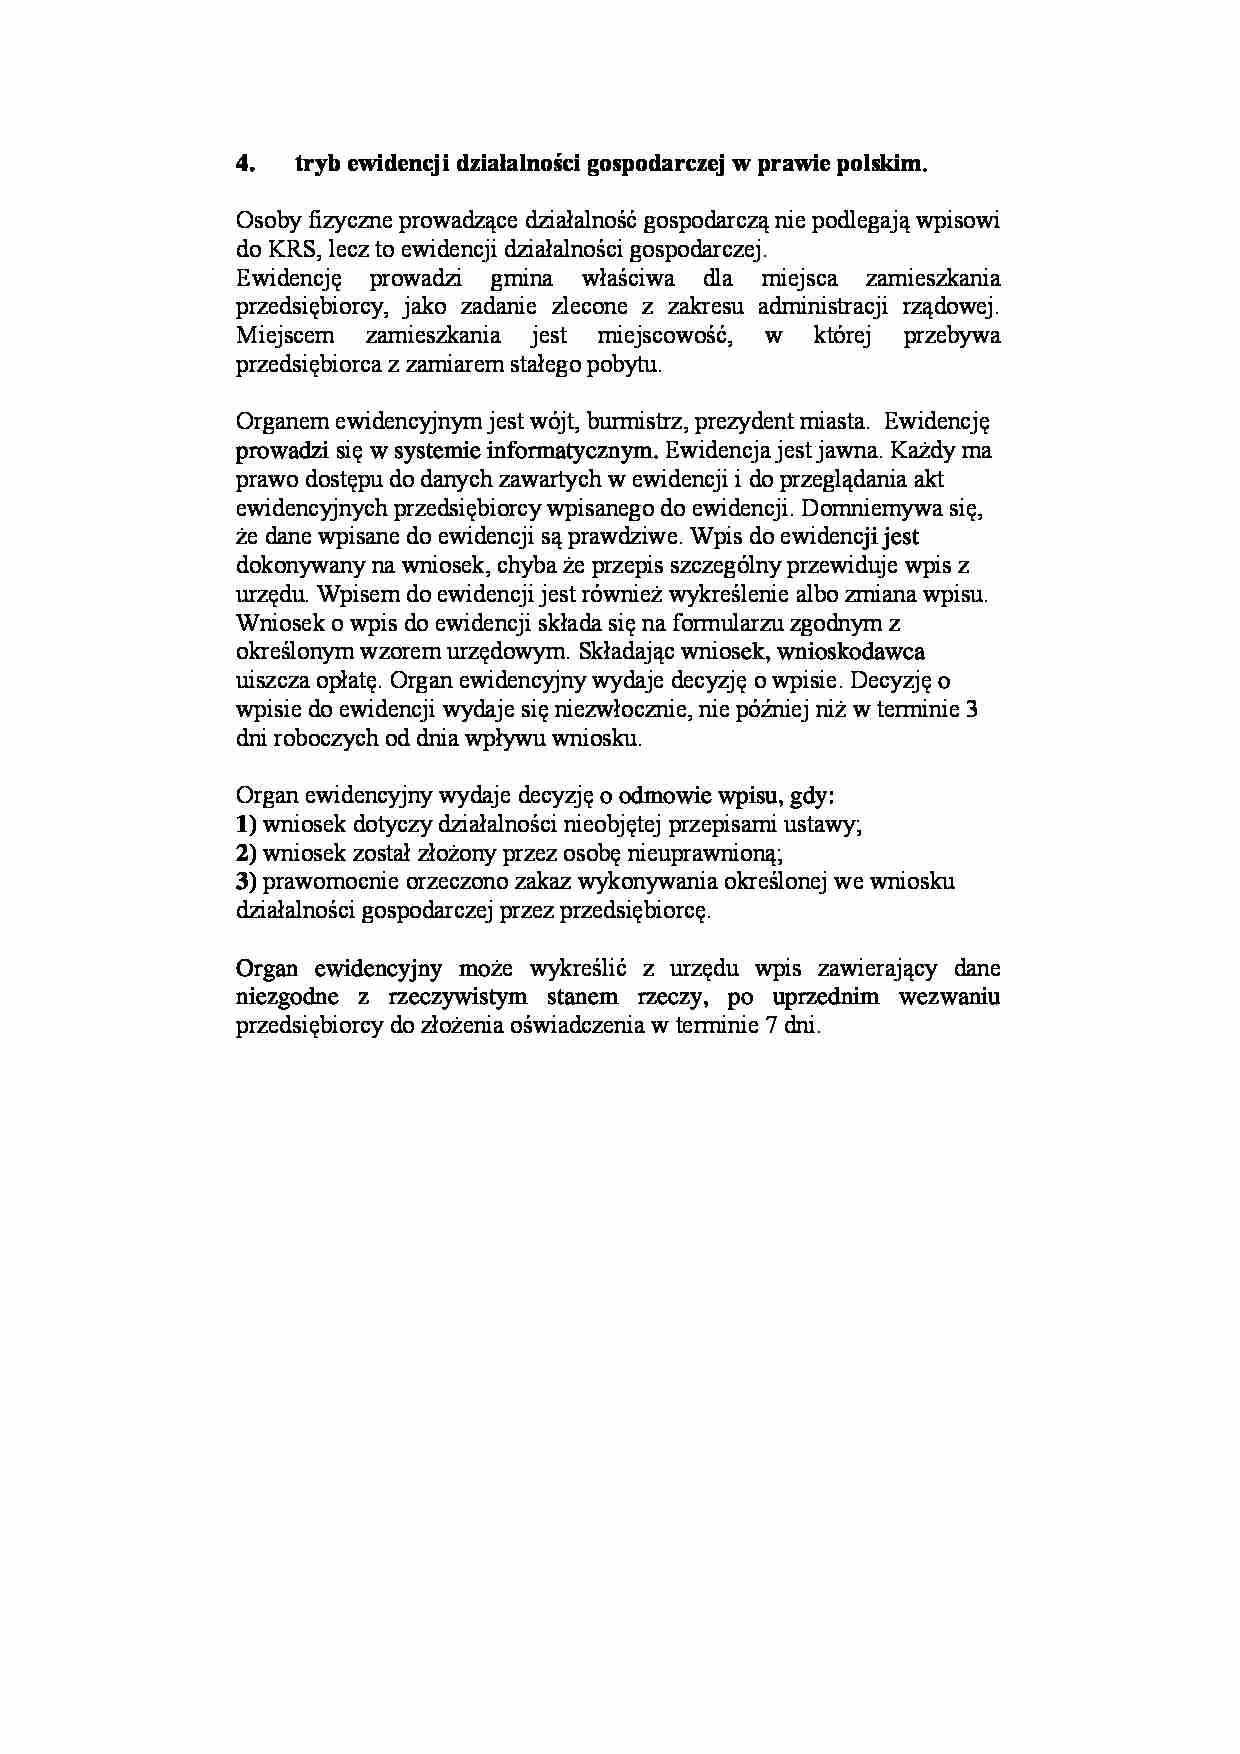 Tryb ewidencji działalności gospodarczej w prawie polskim - strona 1